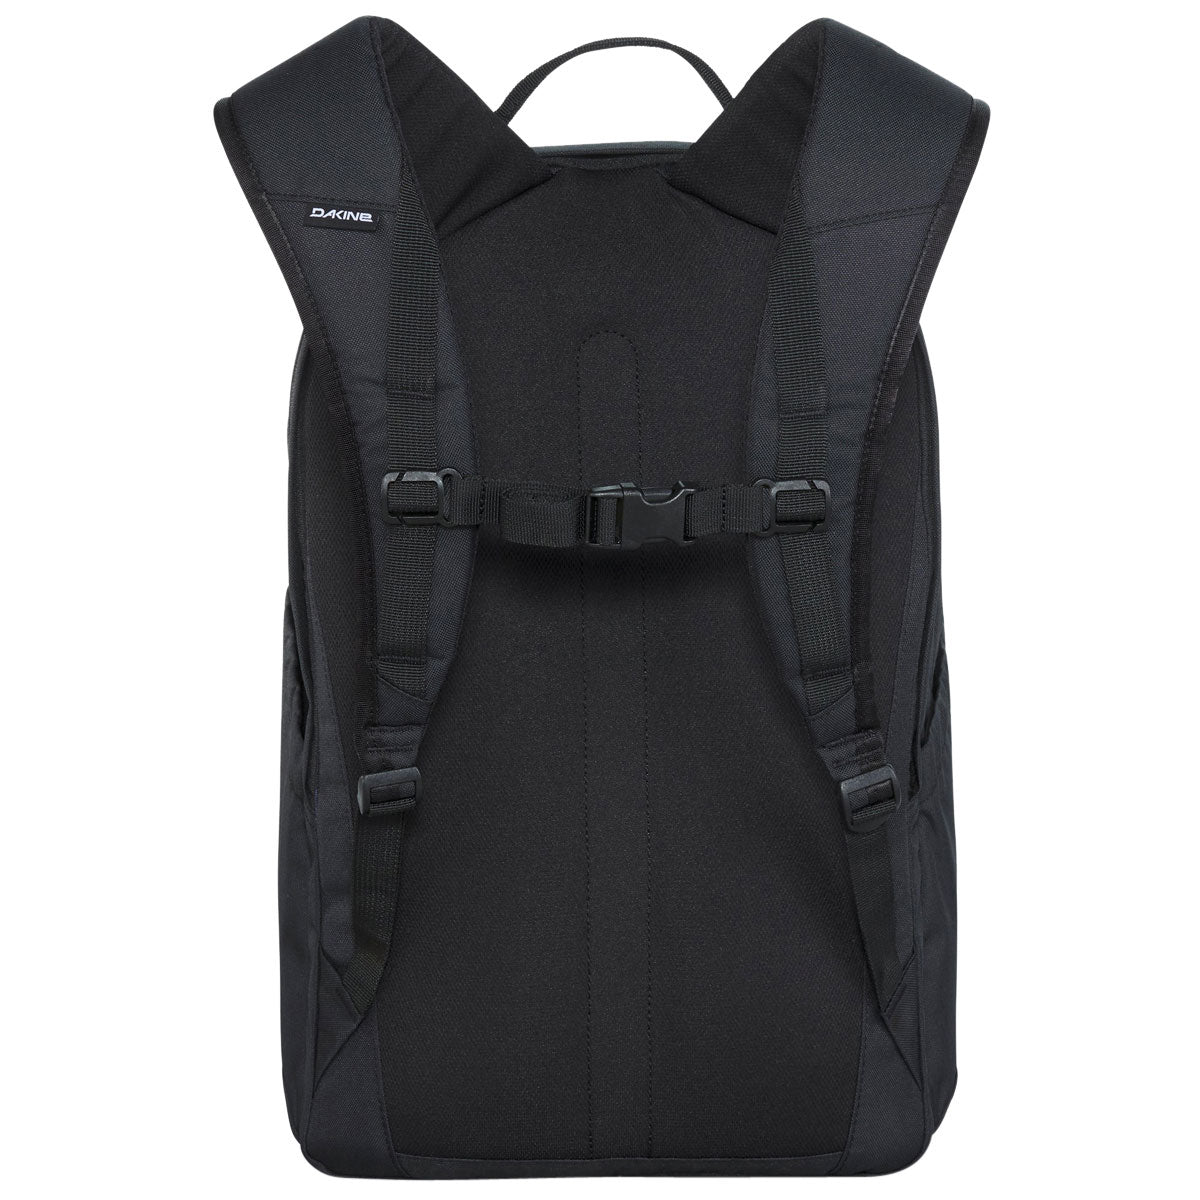 Dakine Method 25L Backpack - Black image 2